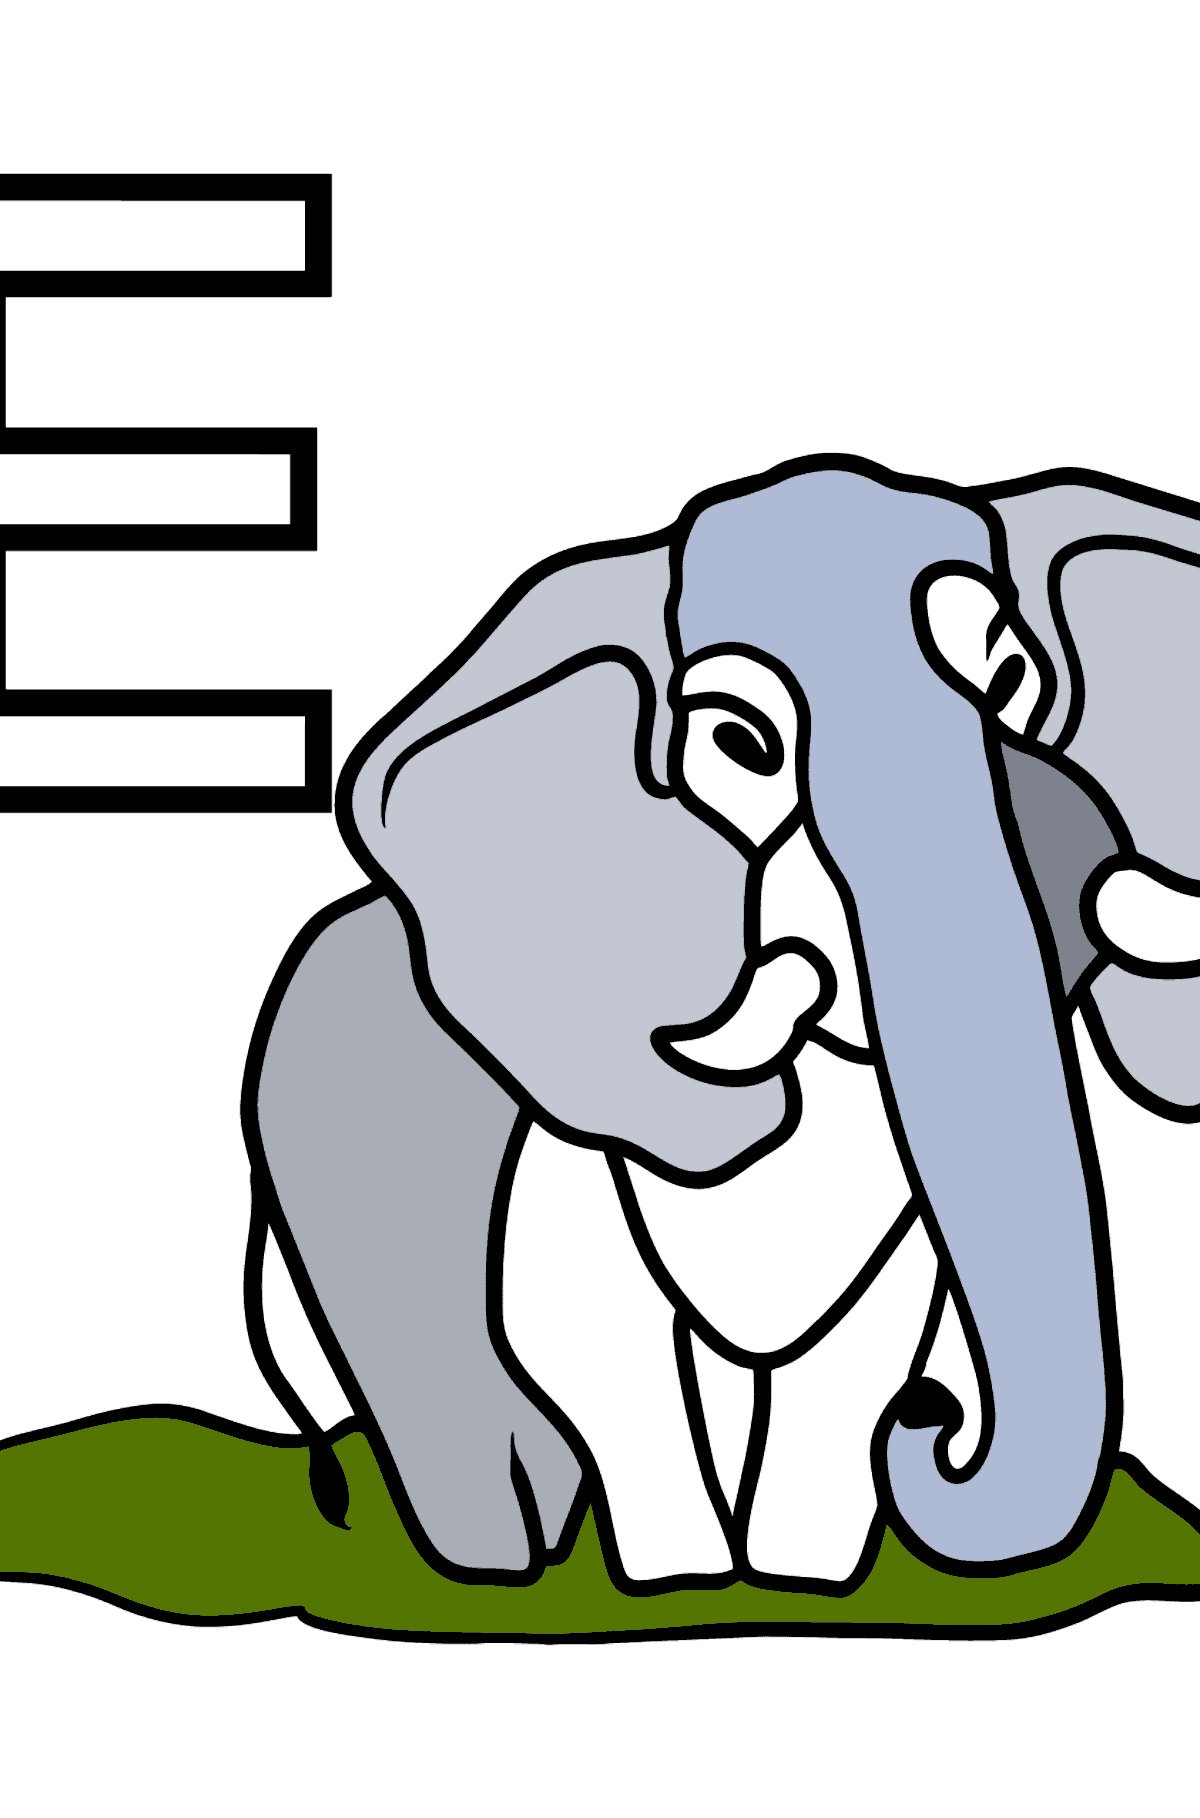 Dibujo de Letra E inglesa para colorear - ELEPHANT - Dibujos para Colorear para Niños